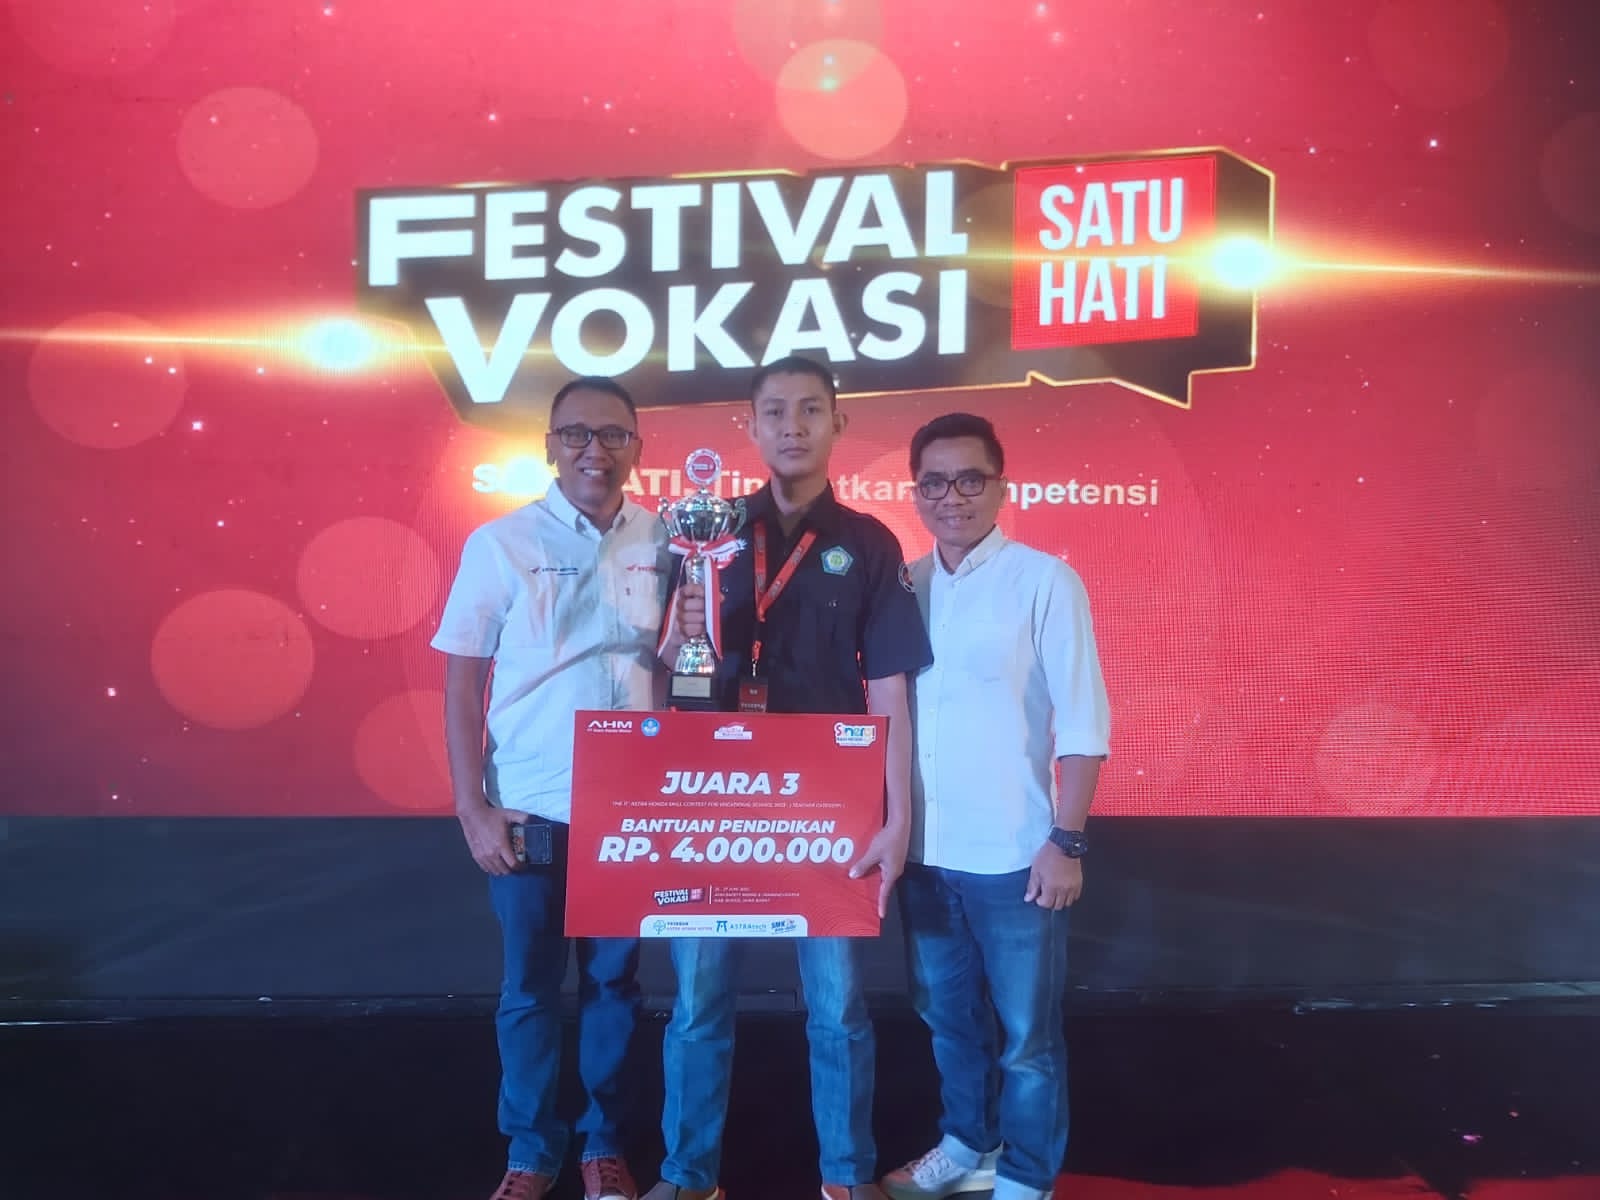 Guru SMK Muhammadiyah Belitang Juara Tiga Nasional Kompetisi Festival Vokasi Satu Hati 